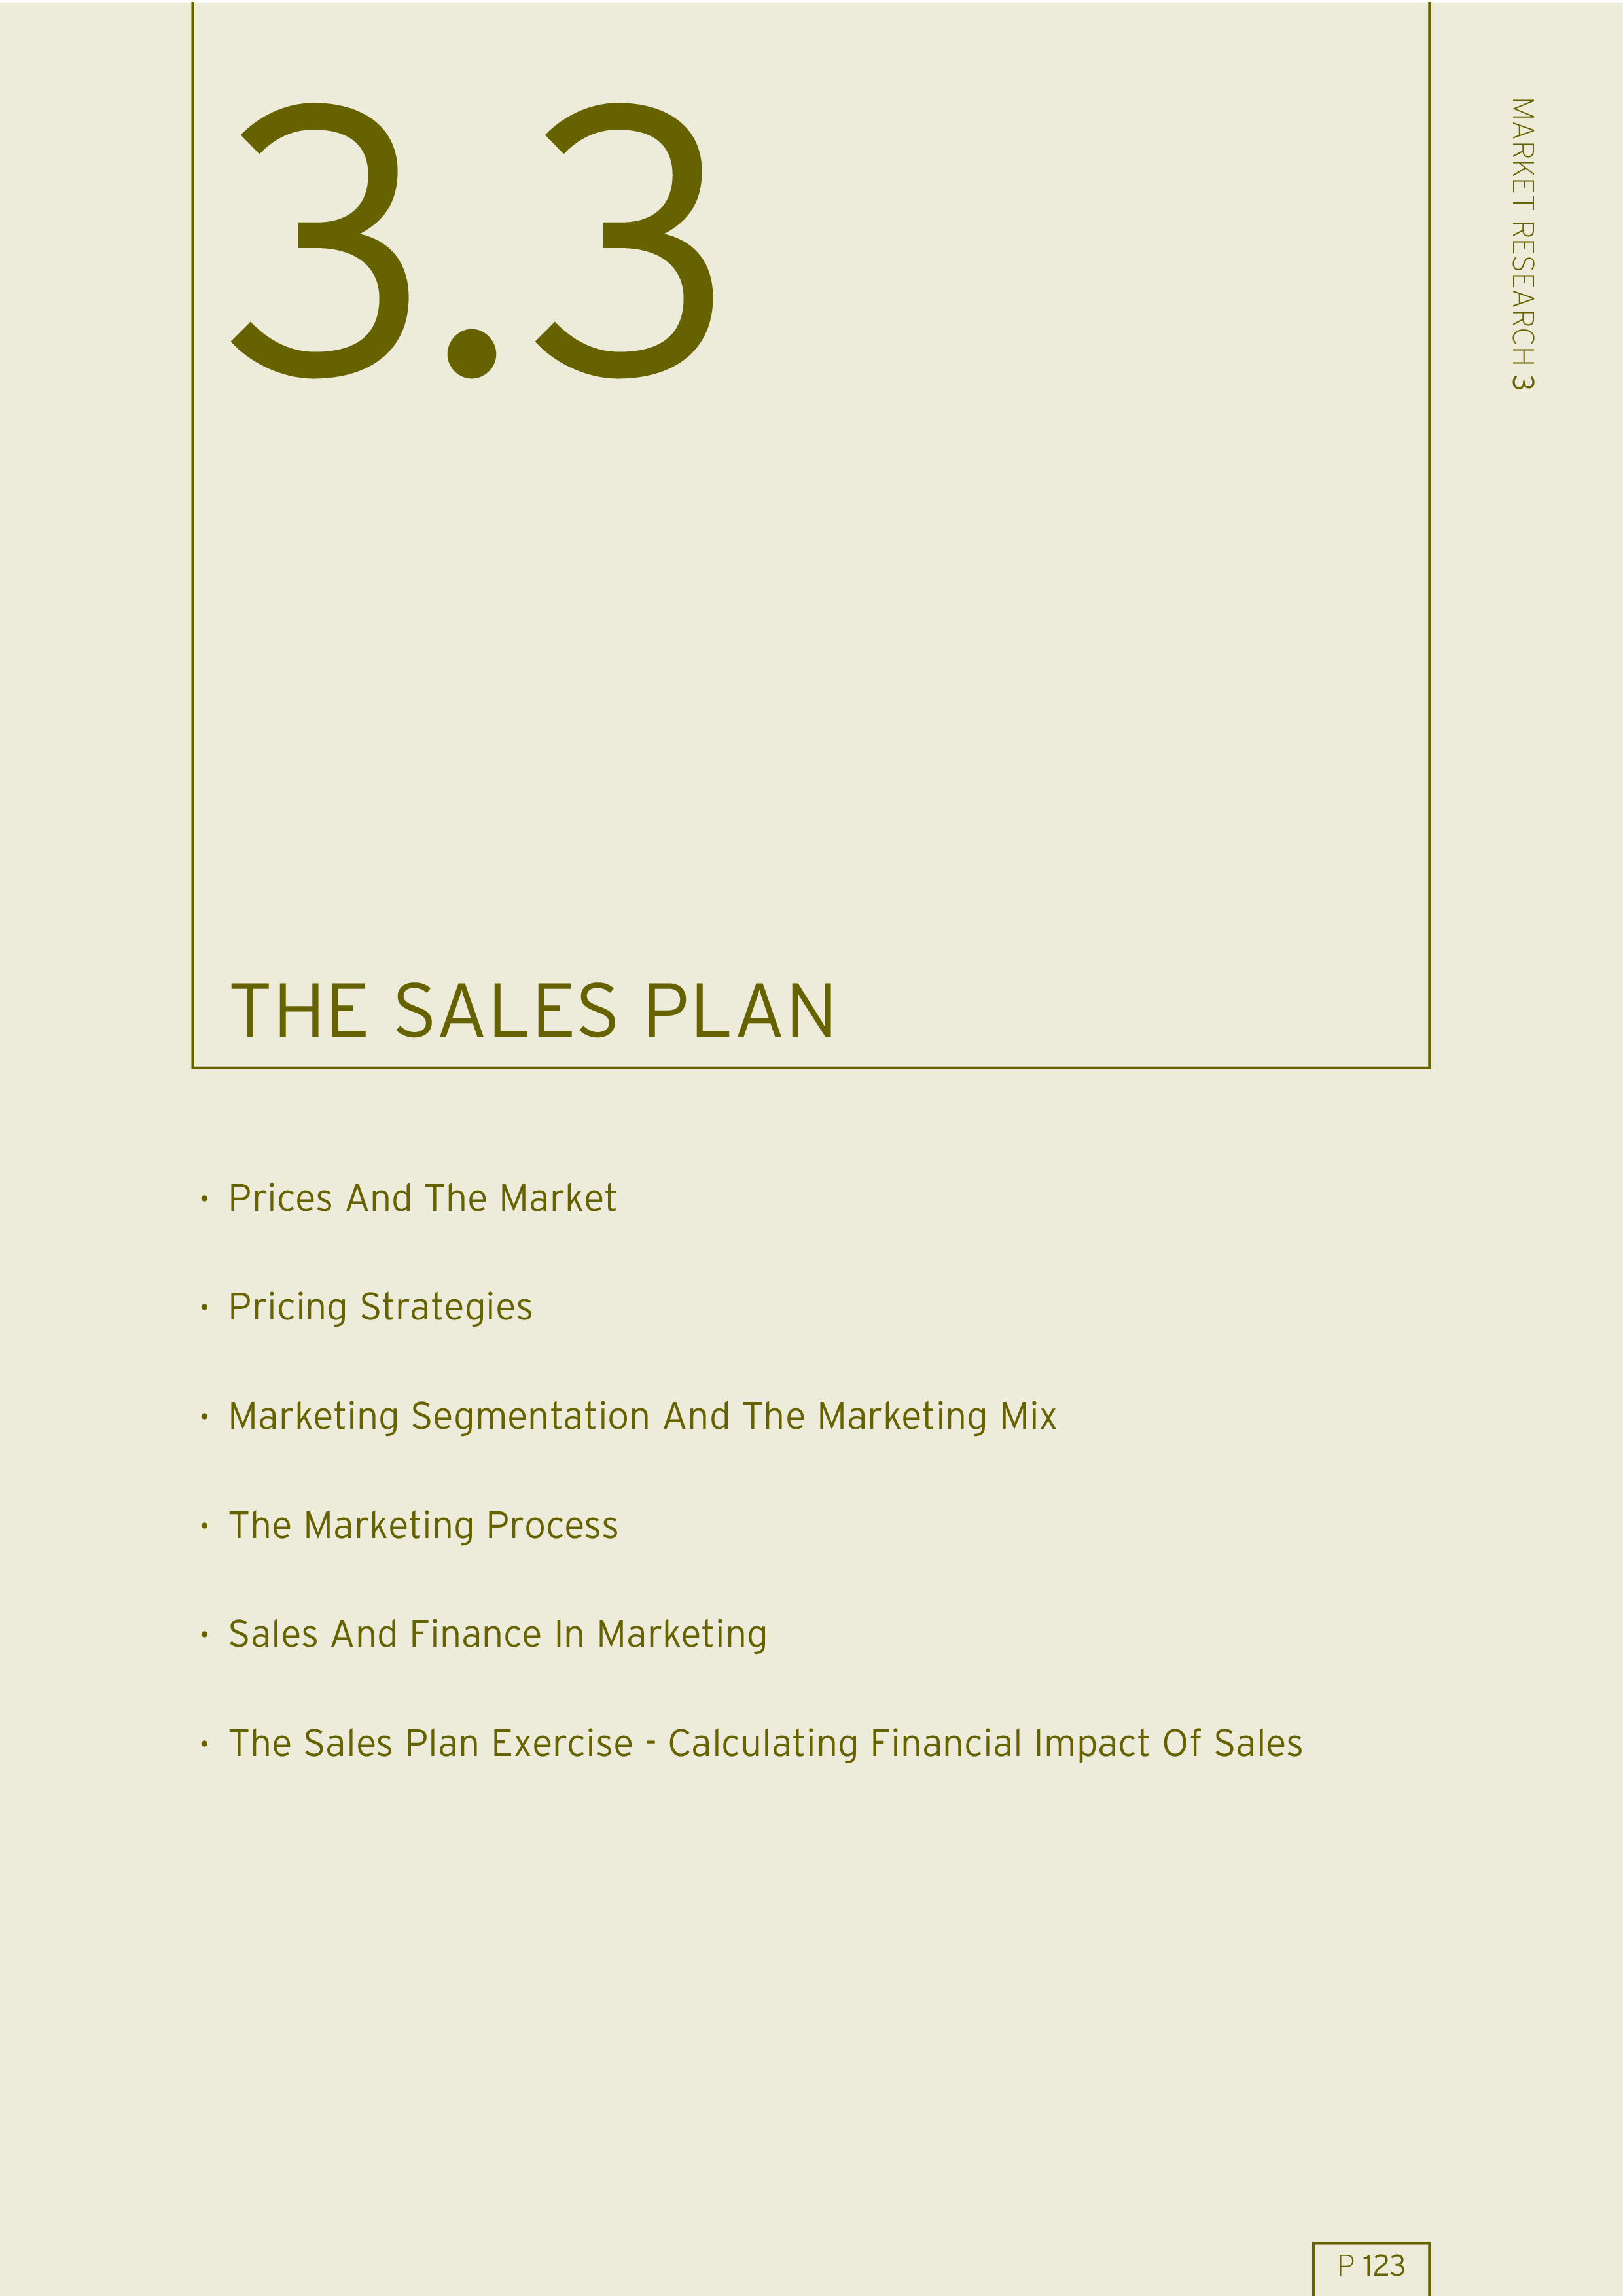 monthly sales plan format plantilla imagen principal